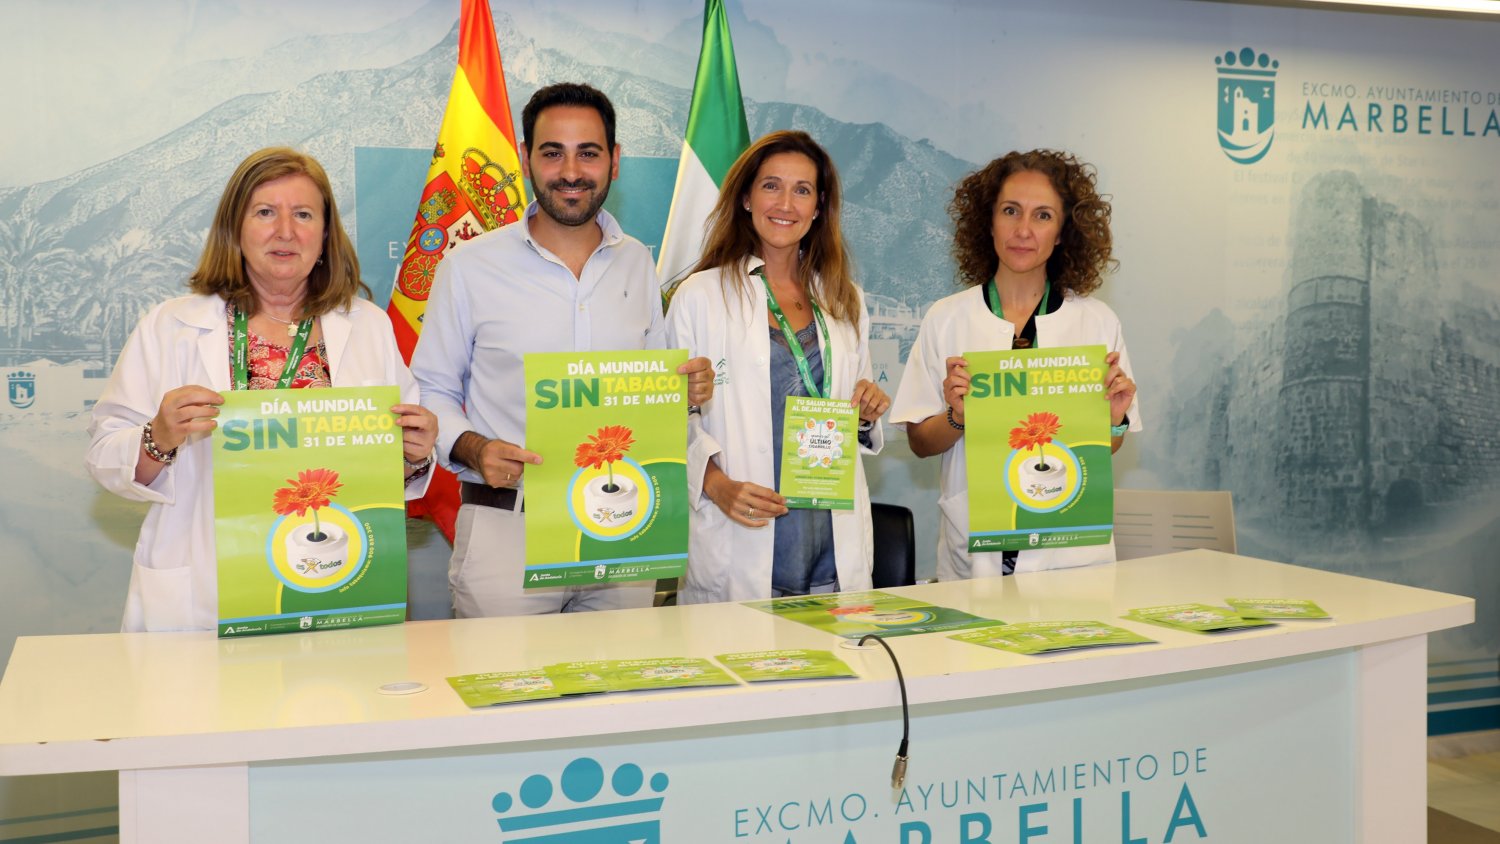 Marbella anuncia que promoverá hábitos de vida saludable por el Día Mundial sin Tabaco